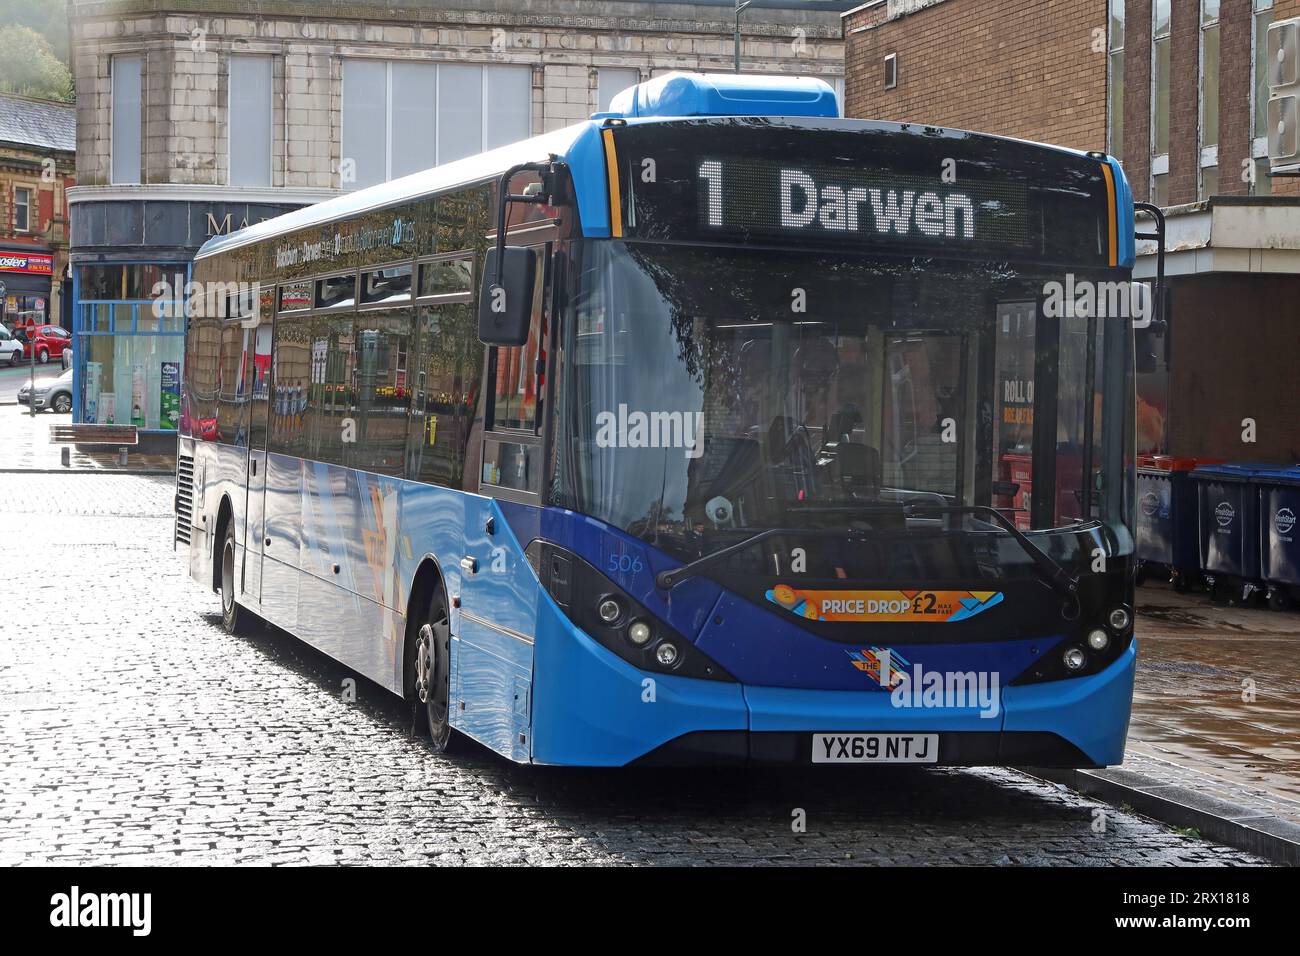 Transports publics locaux - Transdev Blazefield Ltd - Blackburn bus Company numéro 1 dans le centre-ville de Darwen, Lancashire, Angleterre, Royaume-Uni, BB3 1BH Banque D'Images